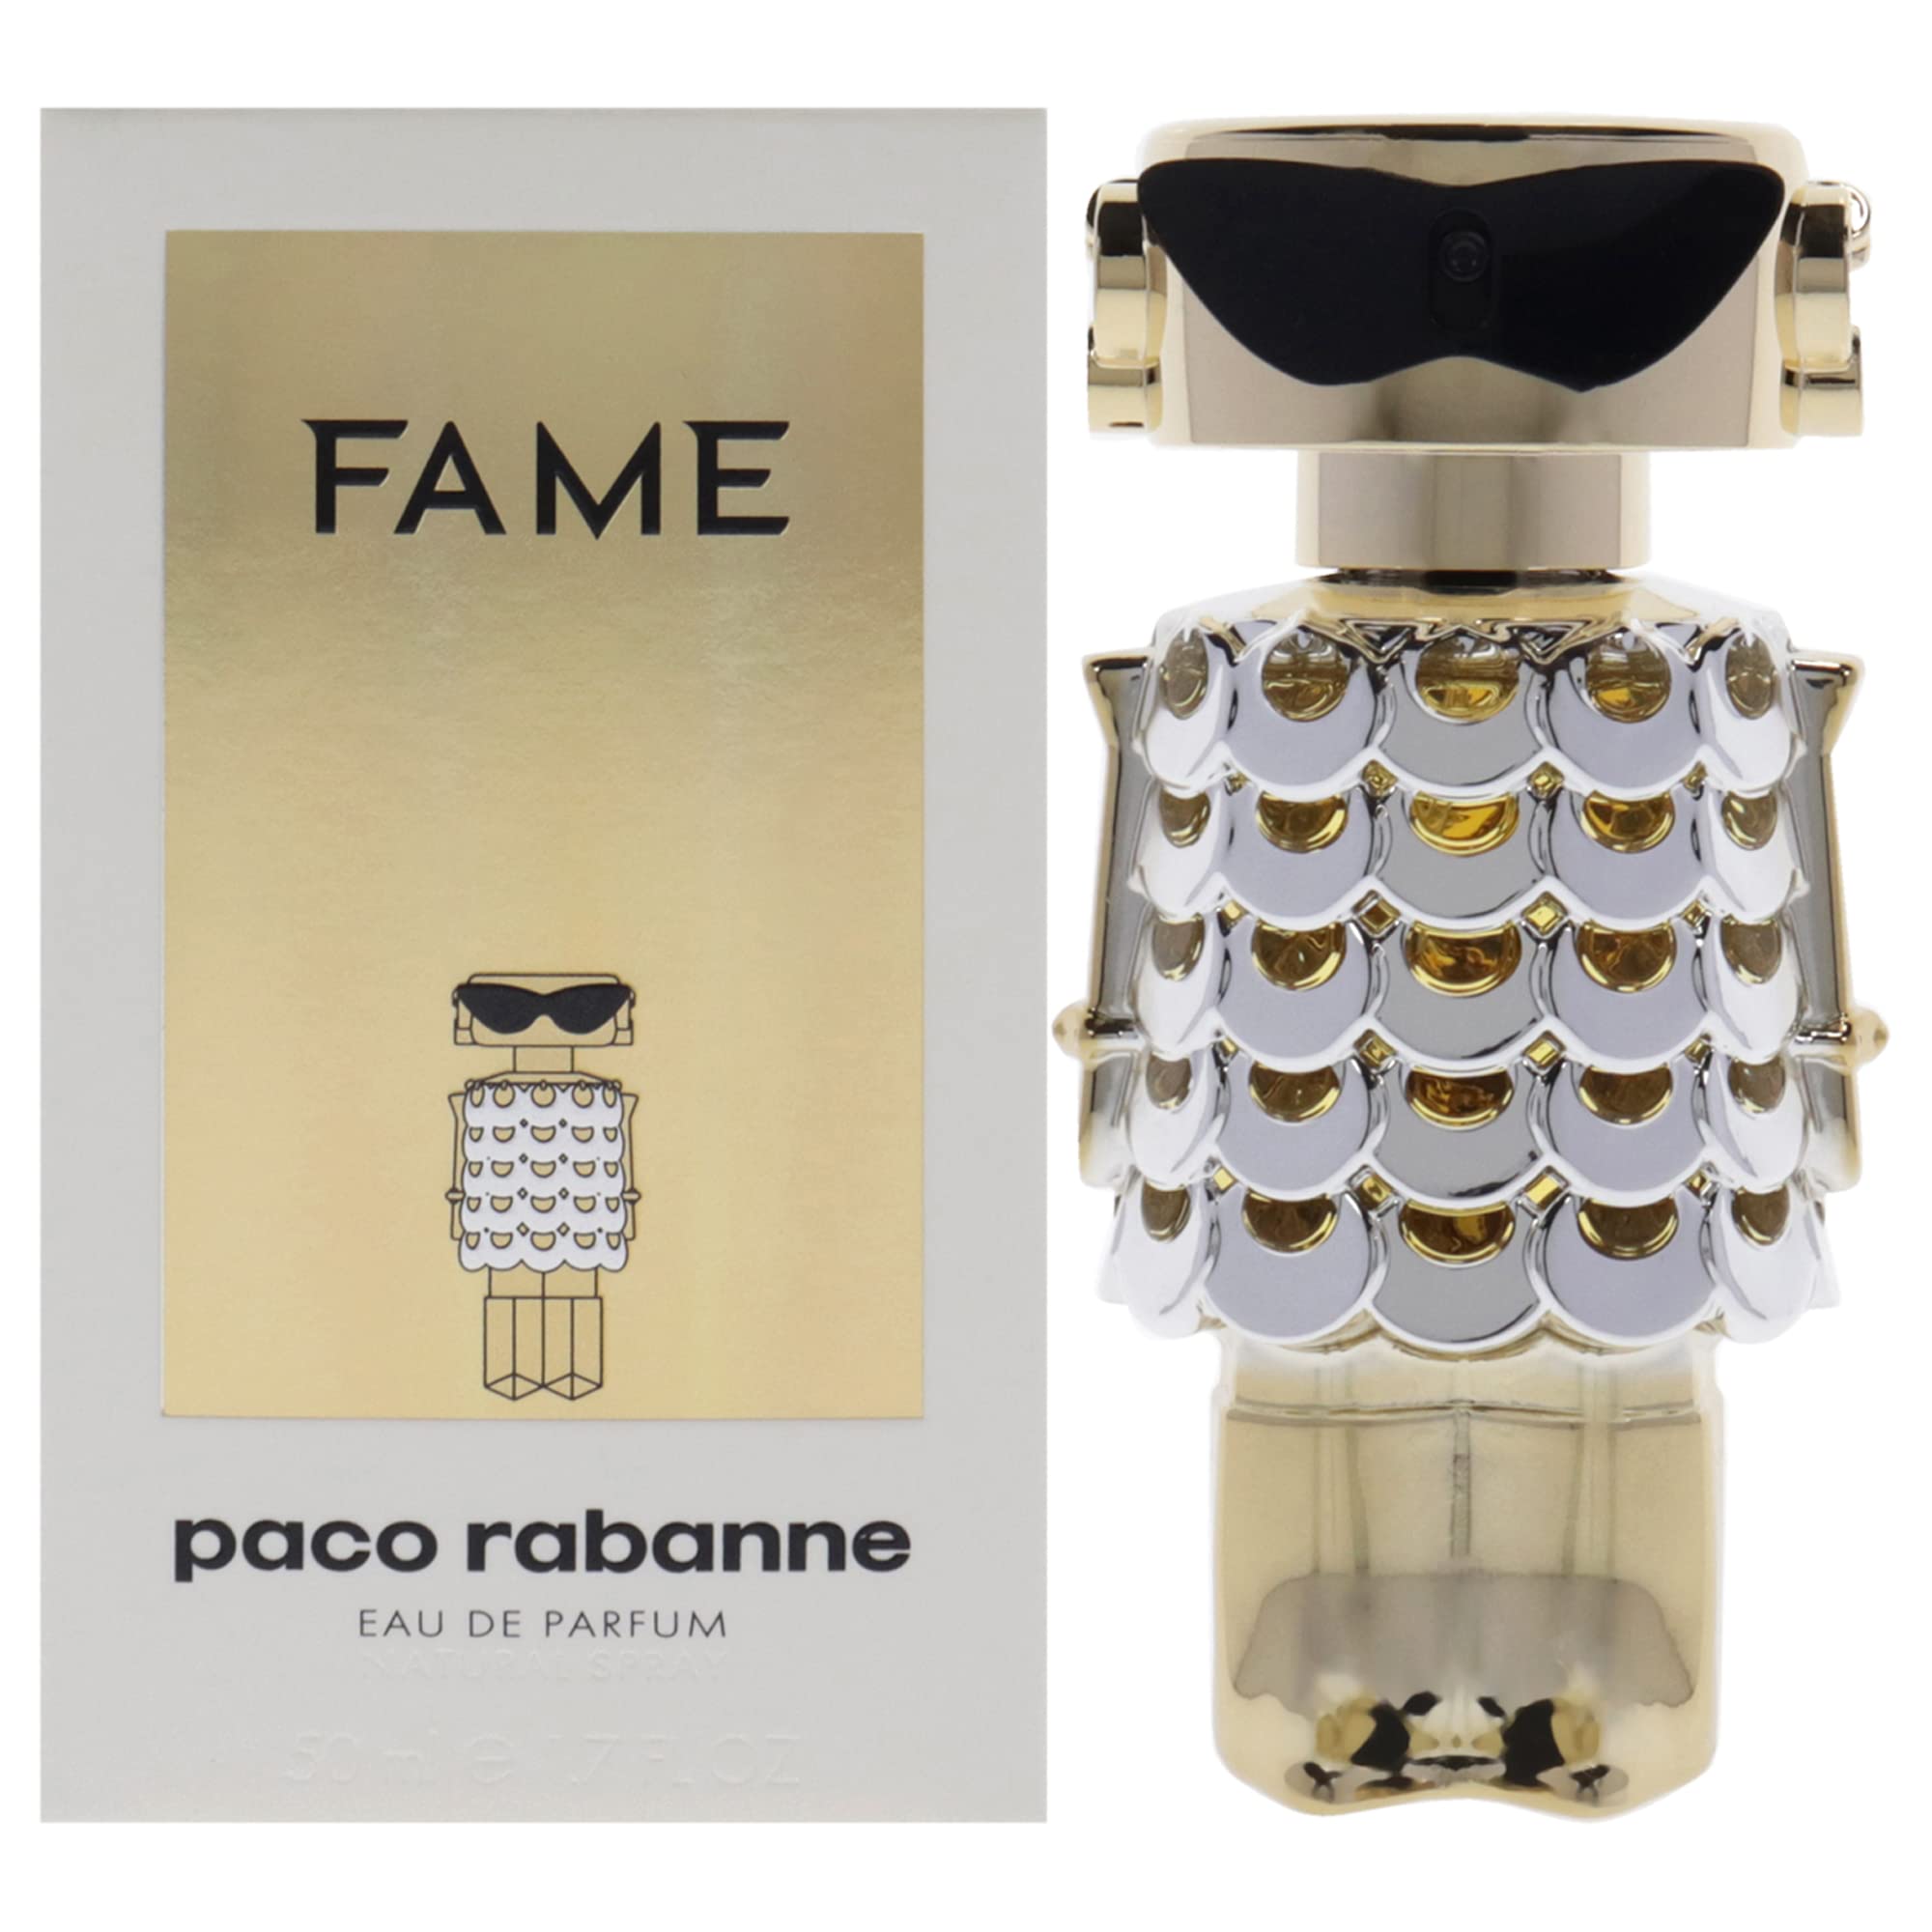 Fame de Paco Rabanne - Perfumería Esencia